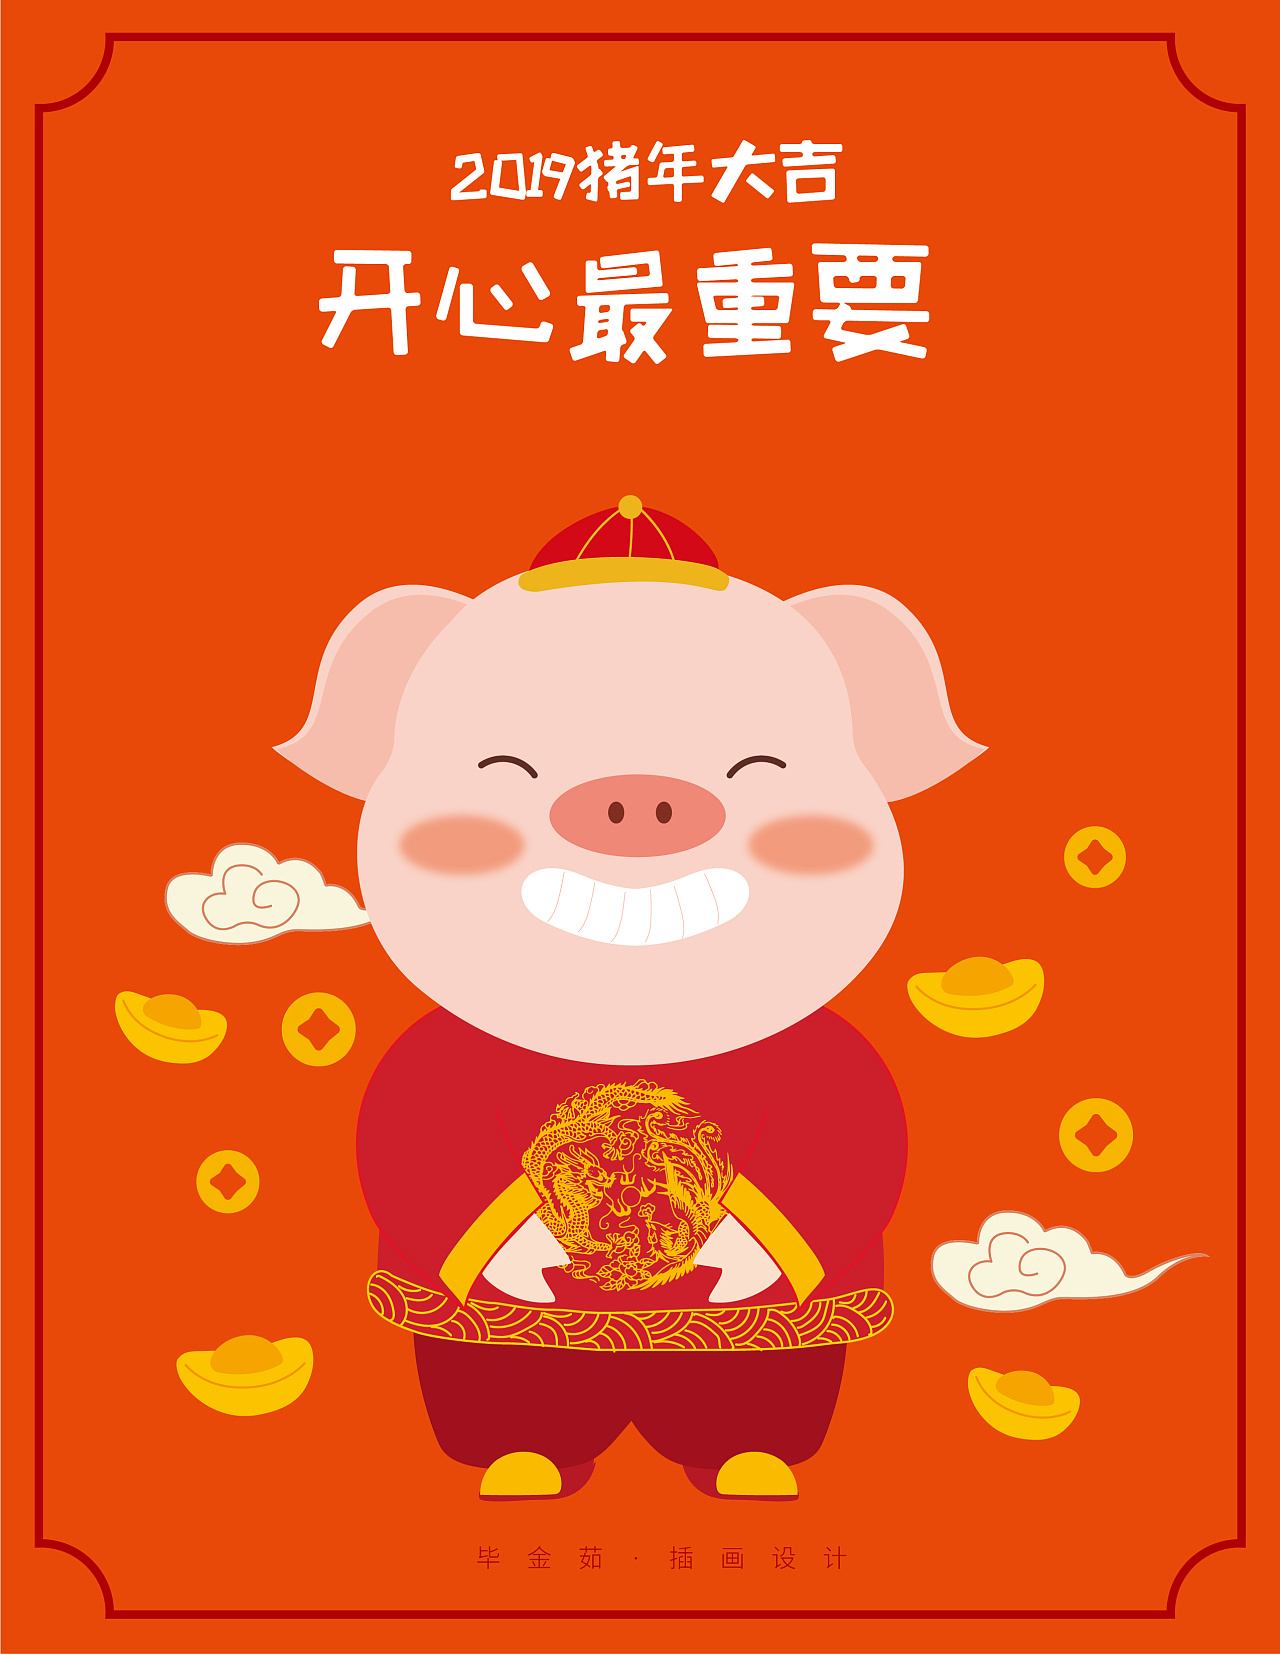 猪年插画设计福猪胖猪卡通猪开屏h5 财源滚滚猪年大吉